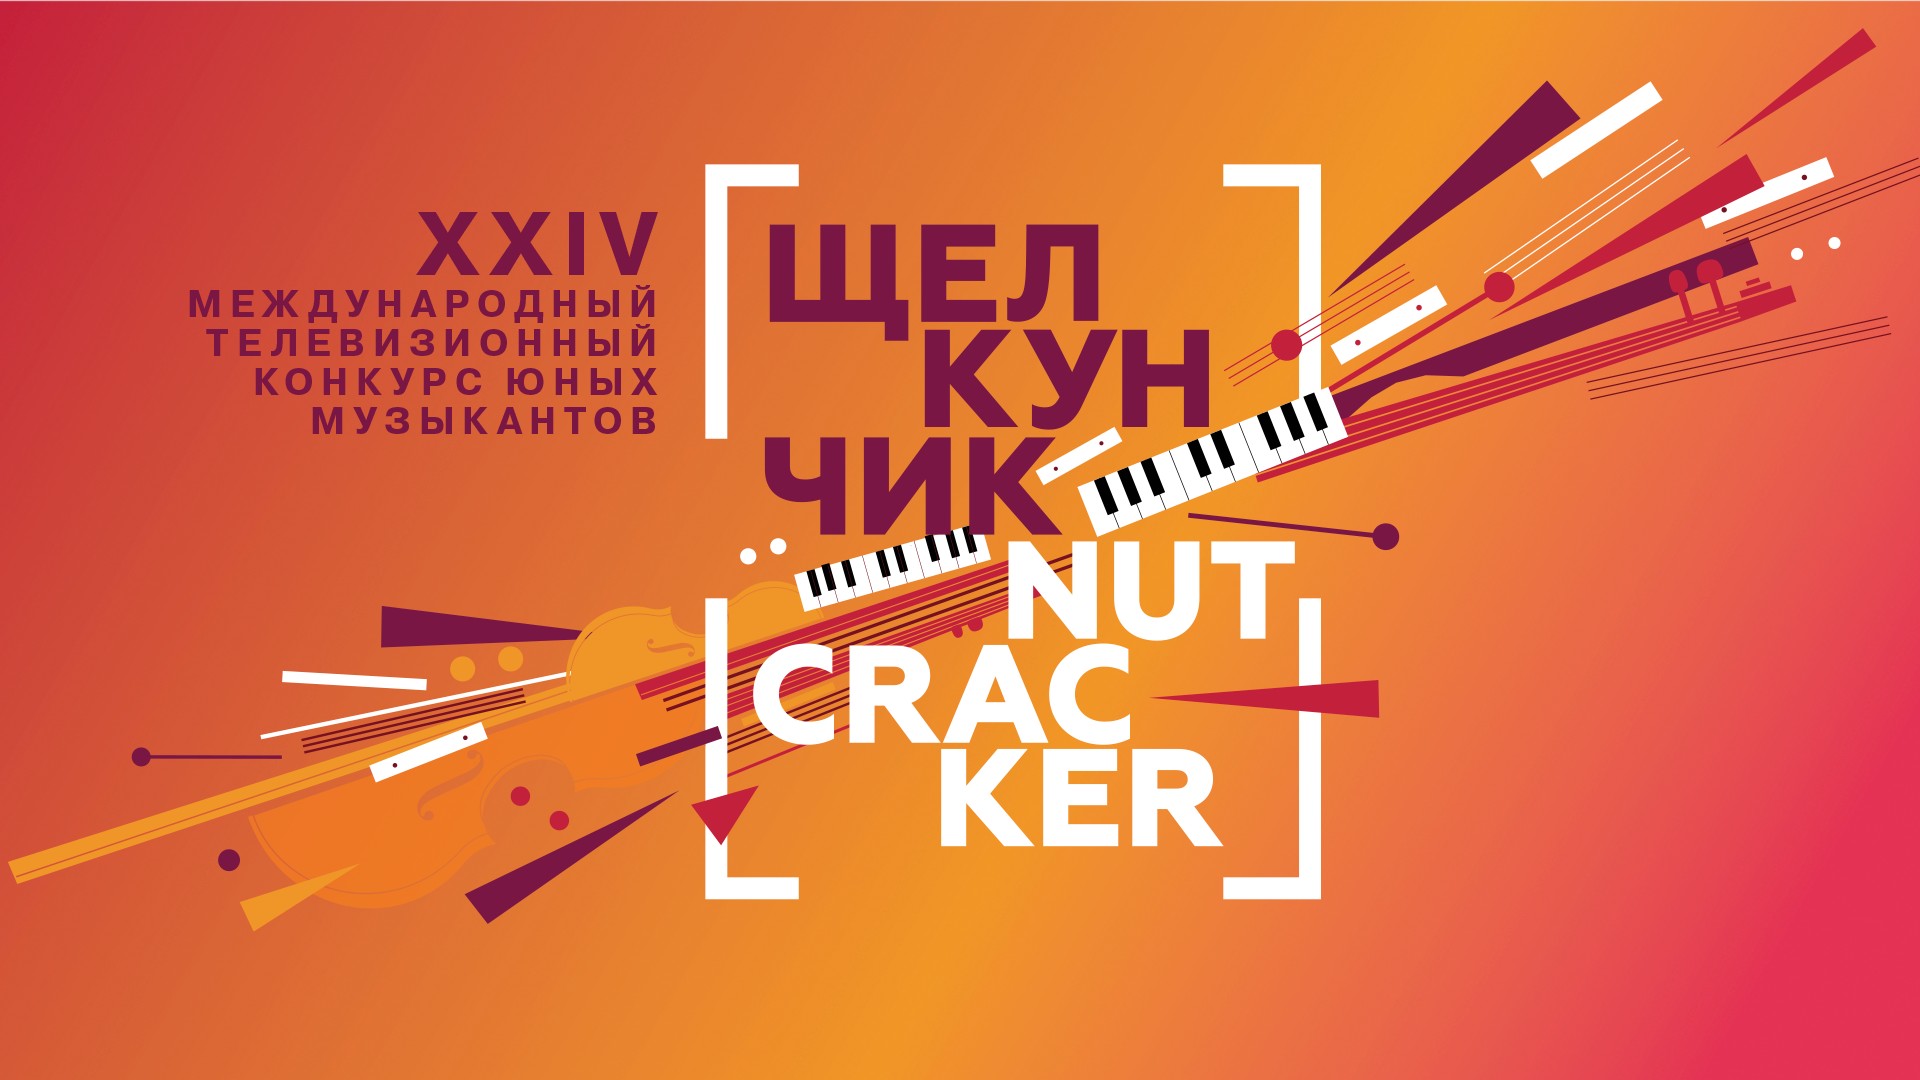 Парад победителей XXIV Международного телевизионного конкурса юных музыкантов «Щелкунчик»